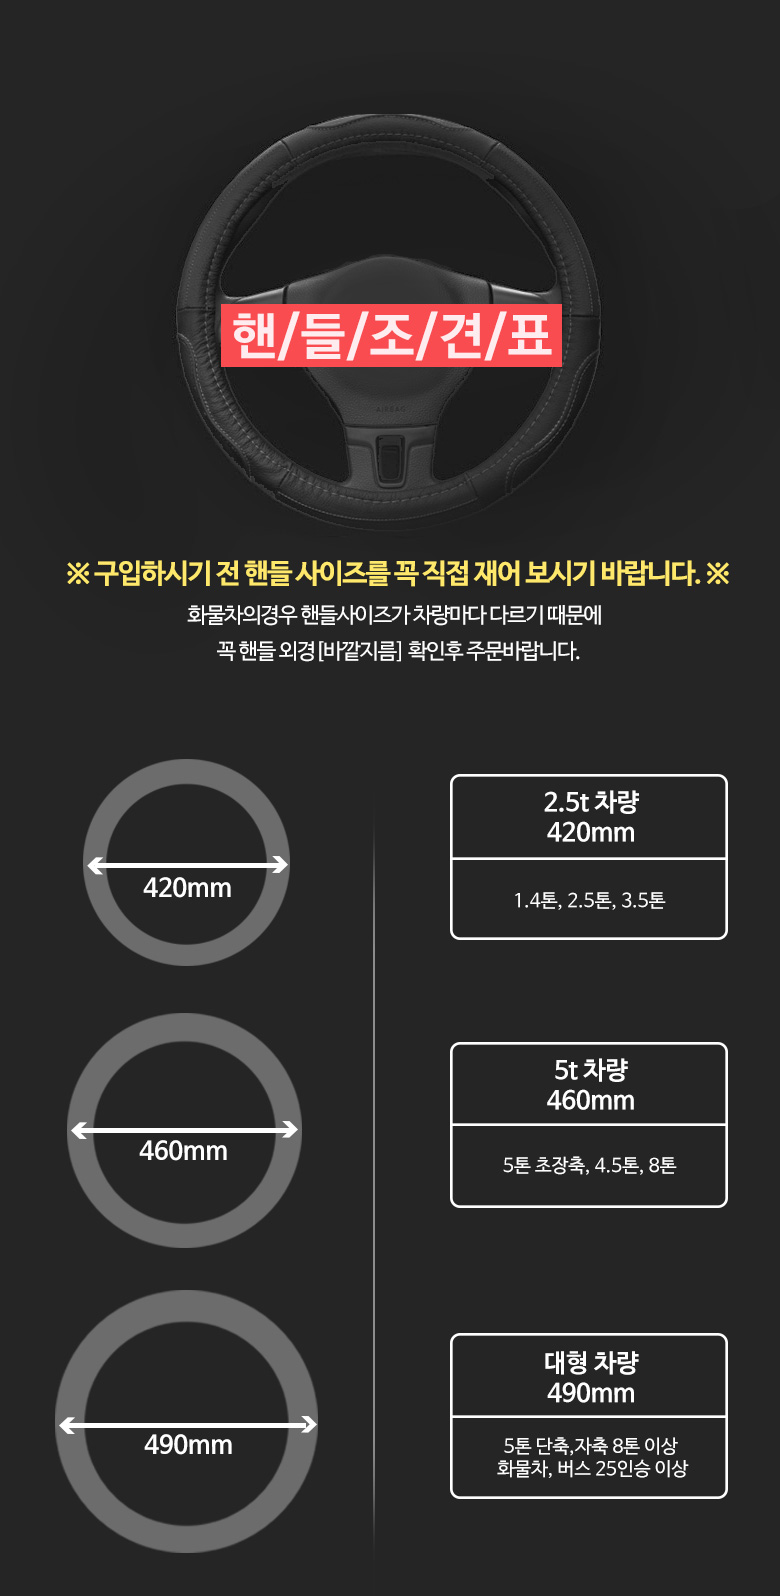 truck_bus_steering_wheel_size_detail.jpg